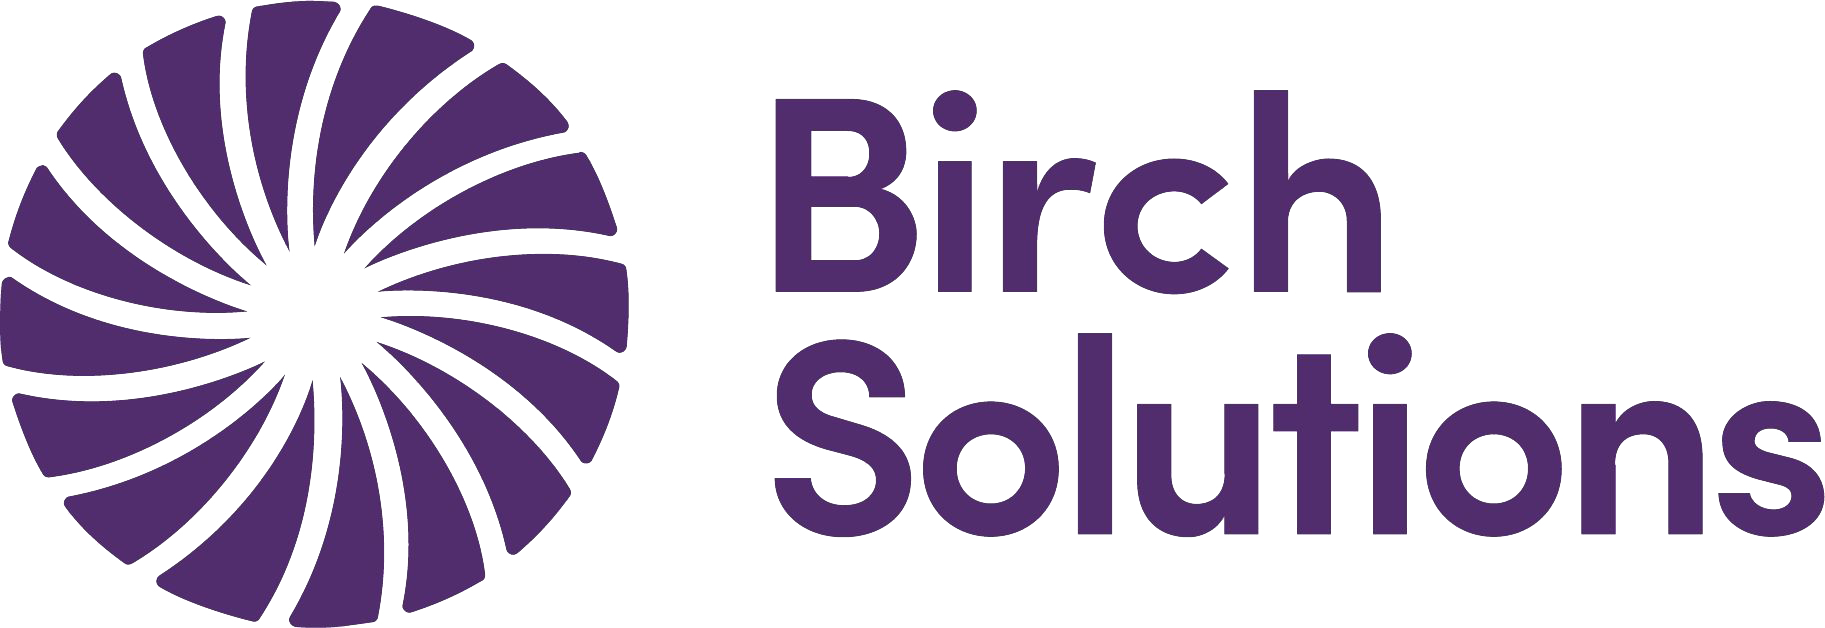 Birch solutions logo